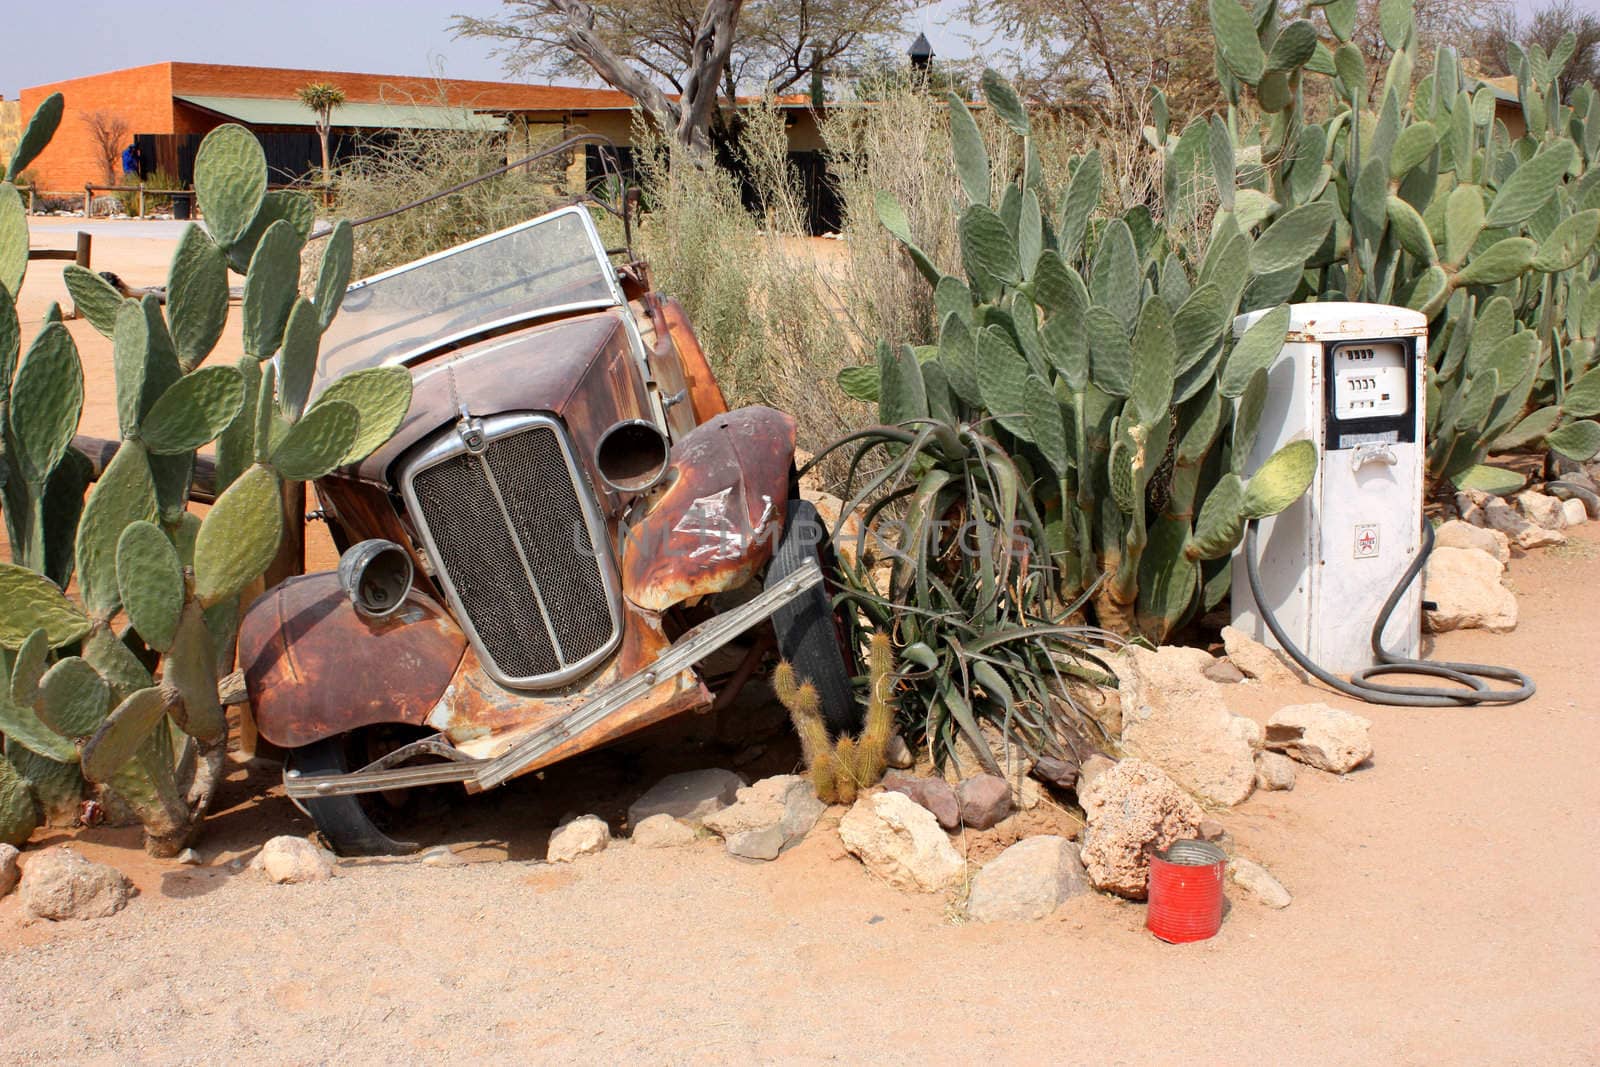 Old car in Namibian desert